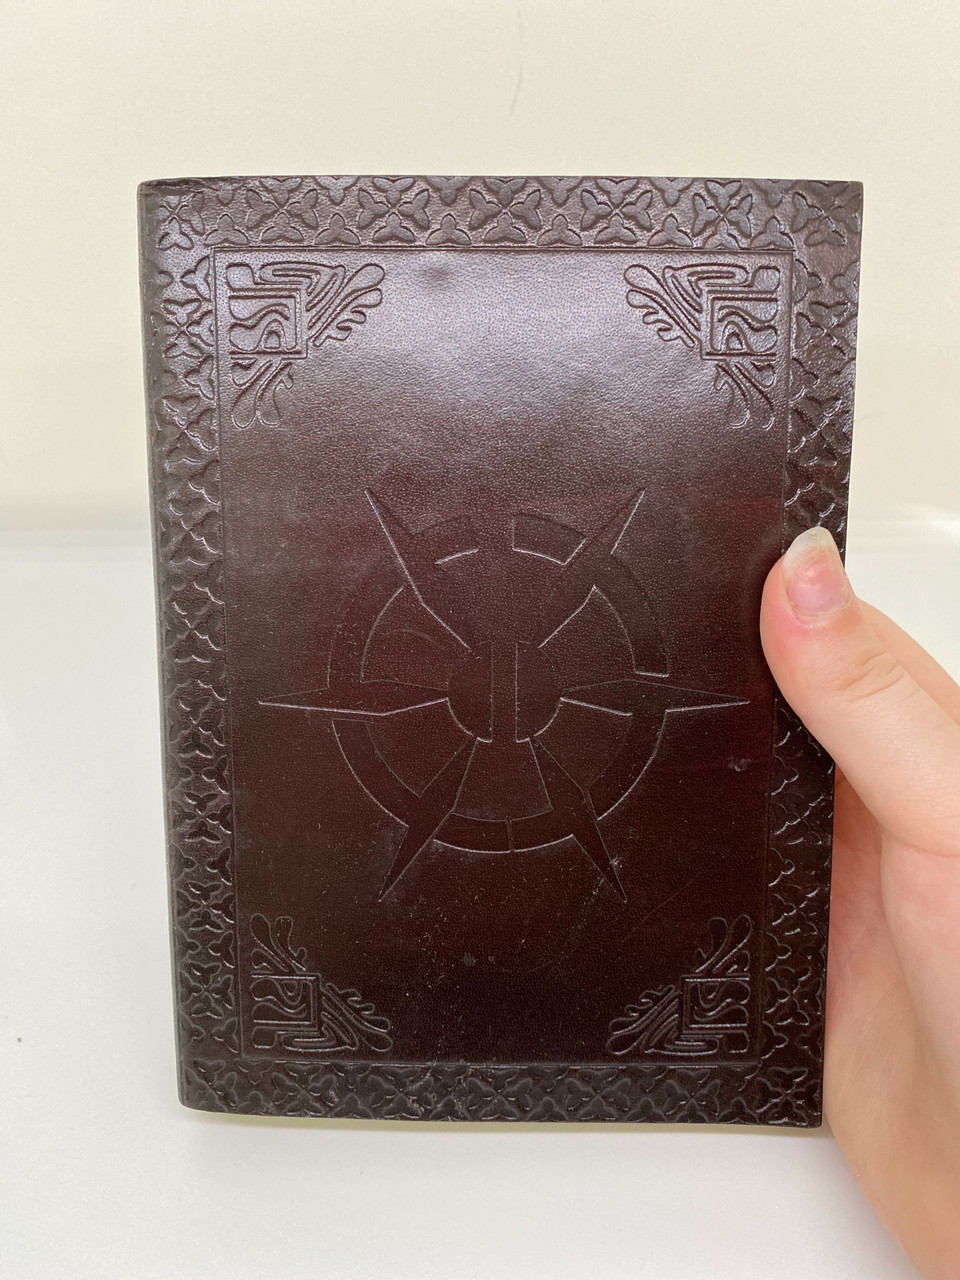 Leather-bound Ravnos Journal / Sketchbook